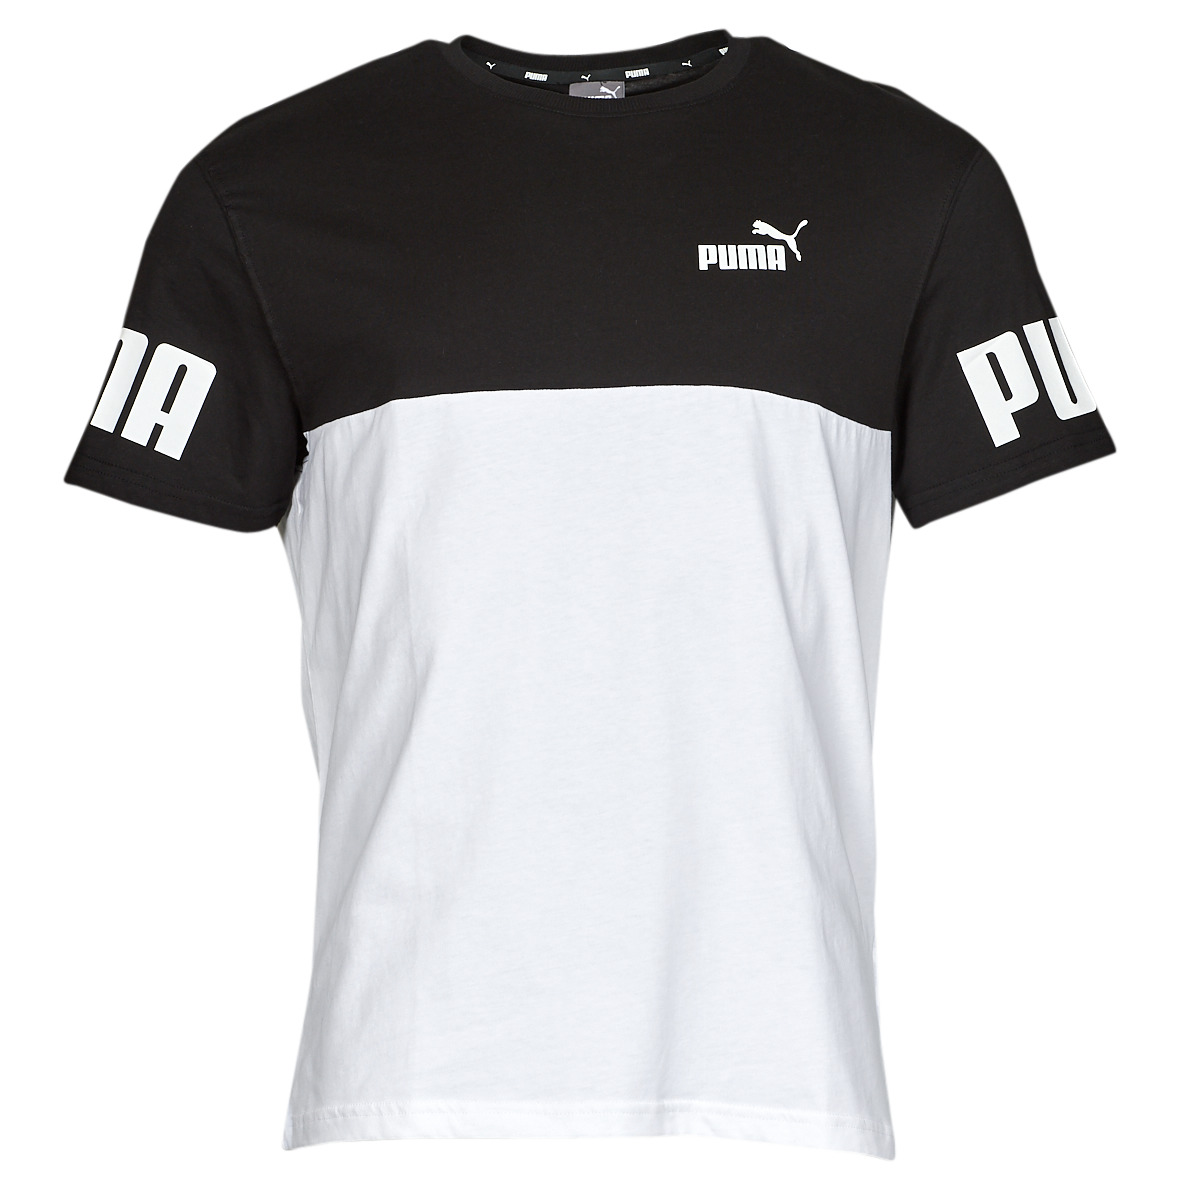 Puma PUMA Livraison - Homme manches ! courtes € Noir Gratuite T-shirts Vêtements Blanc / POWER - | TEE Spartoo COLORBLOCK 30,99